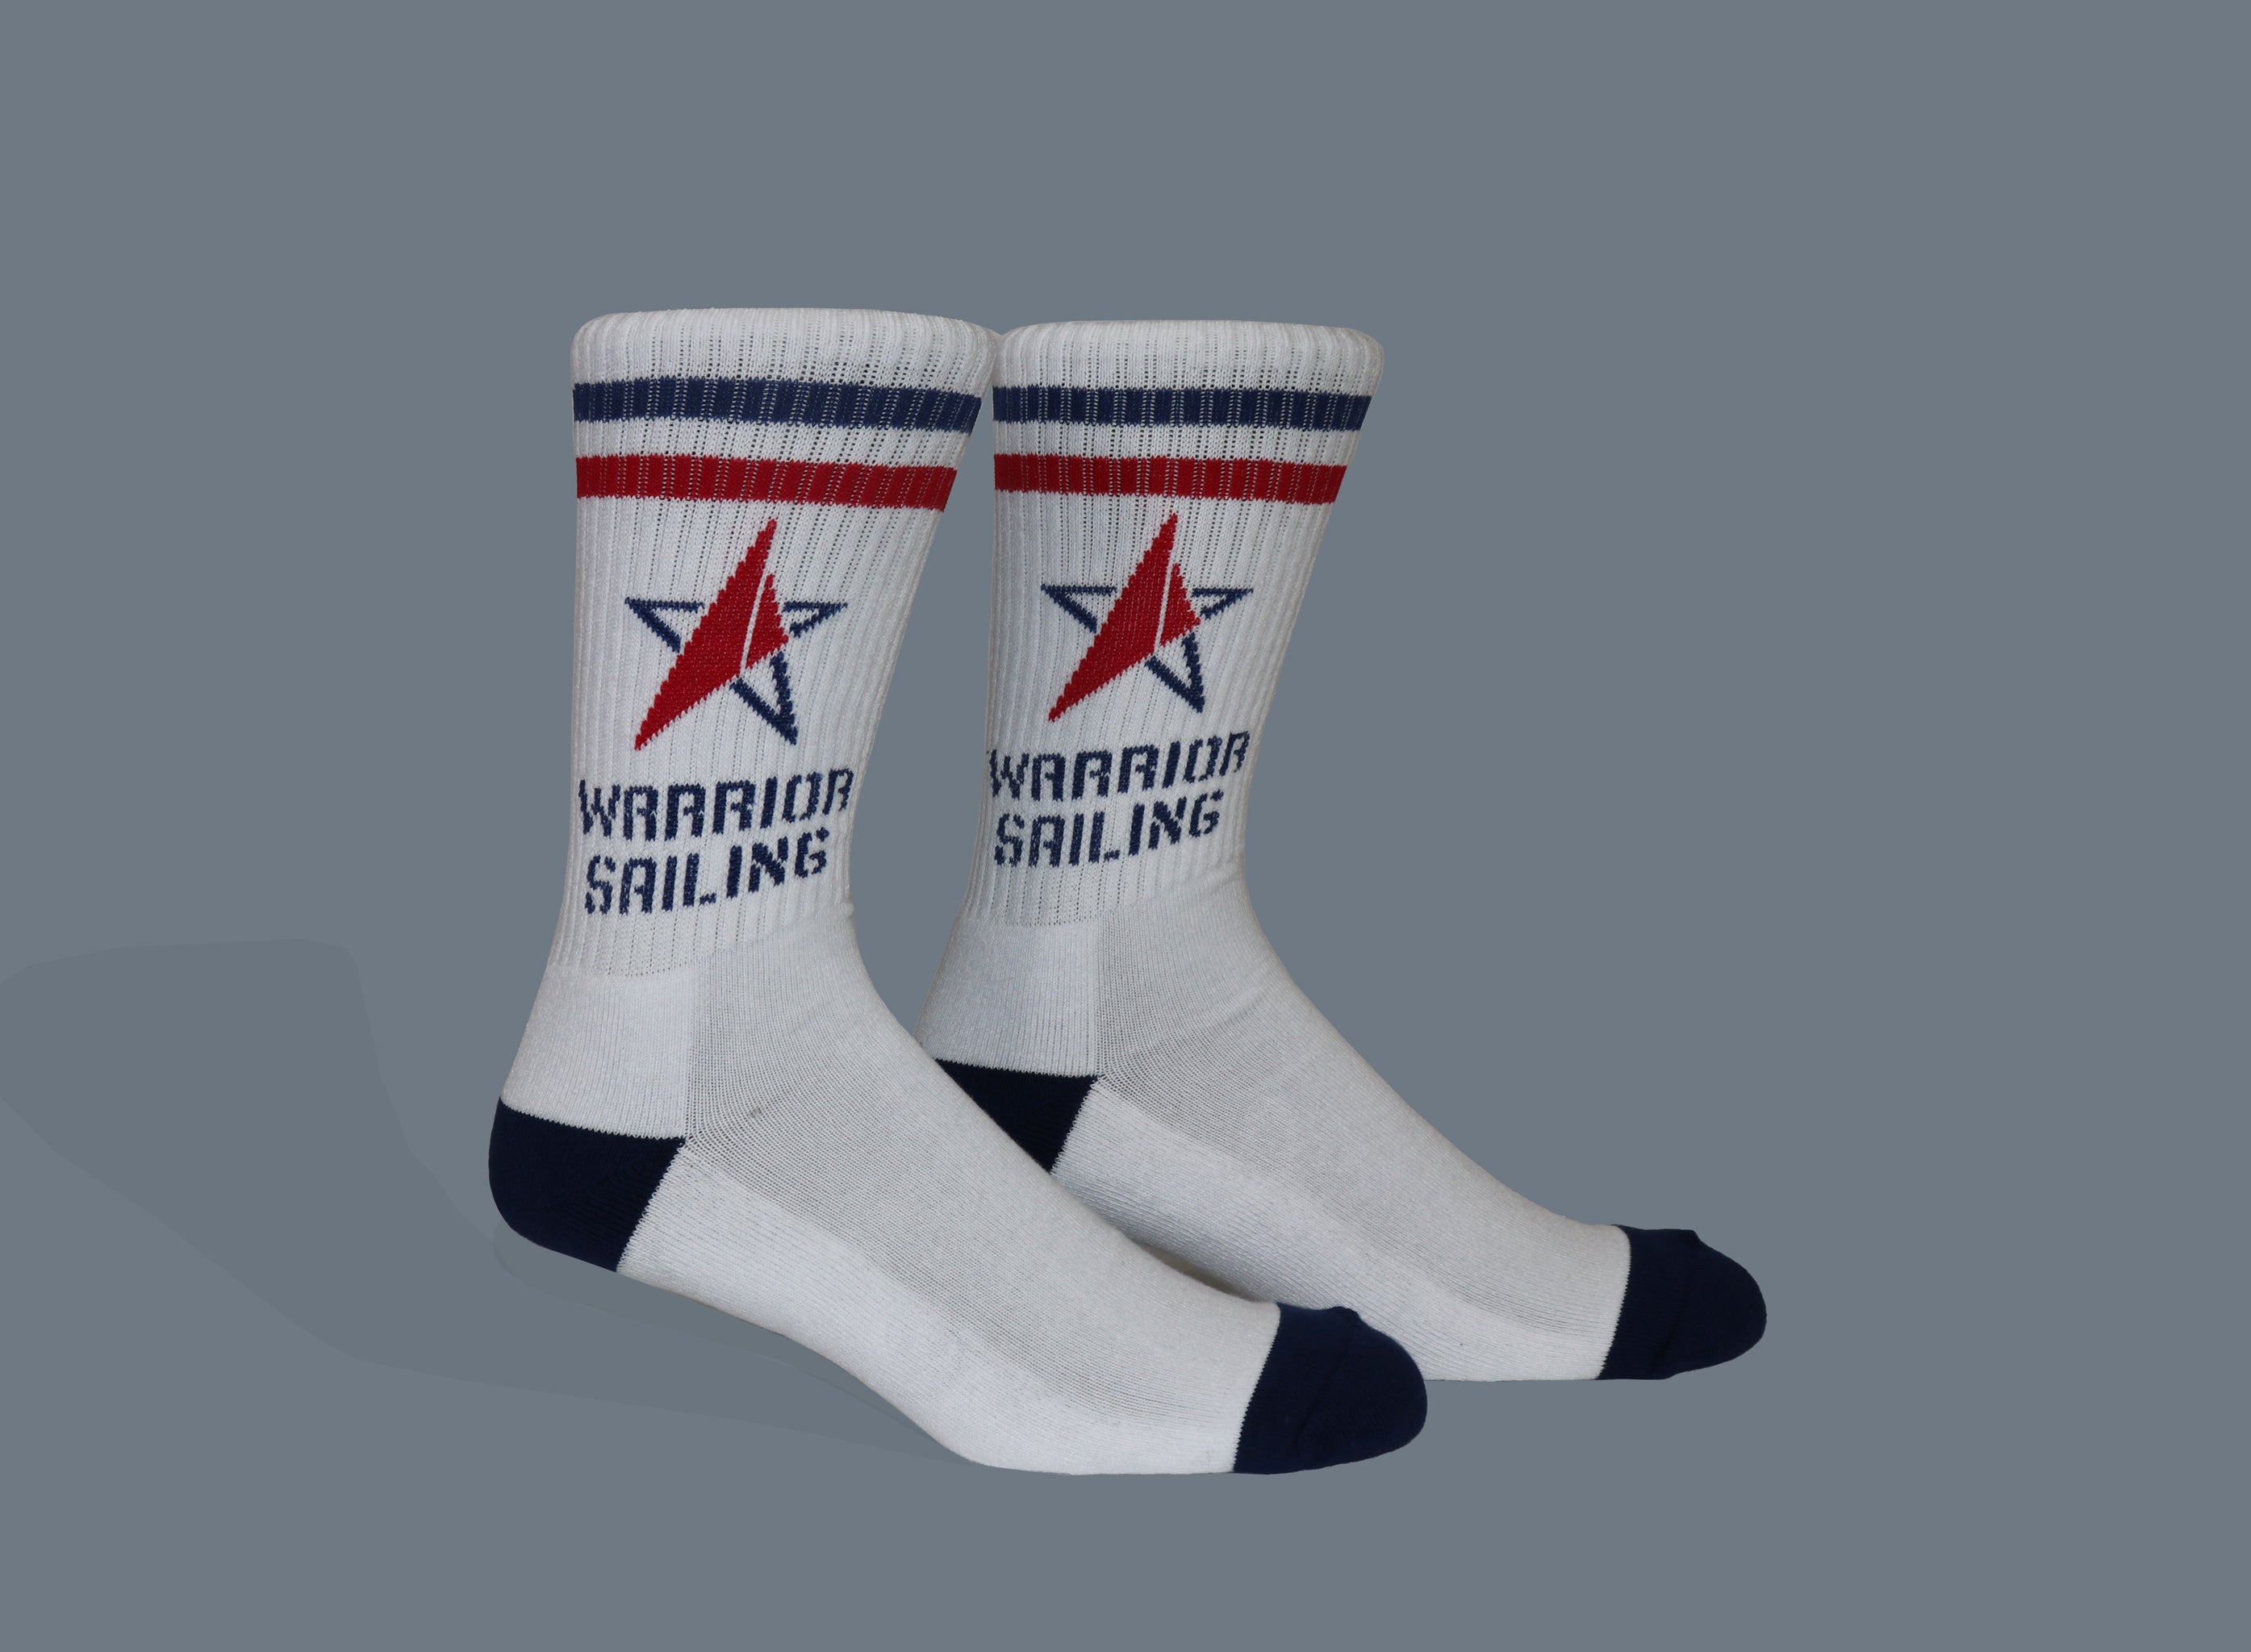 Custom Socks for Warrior Sailing Program